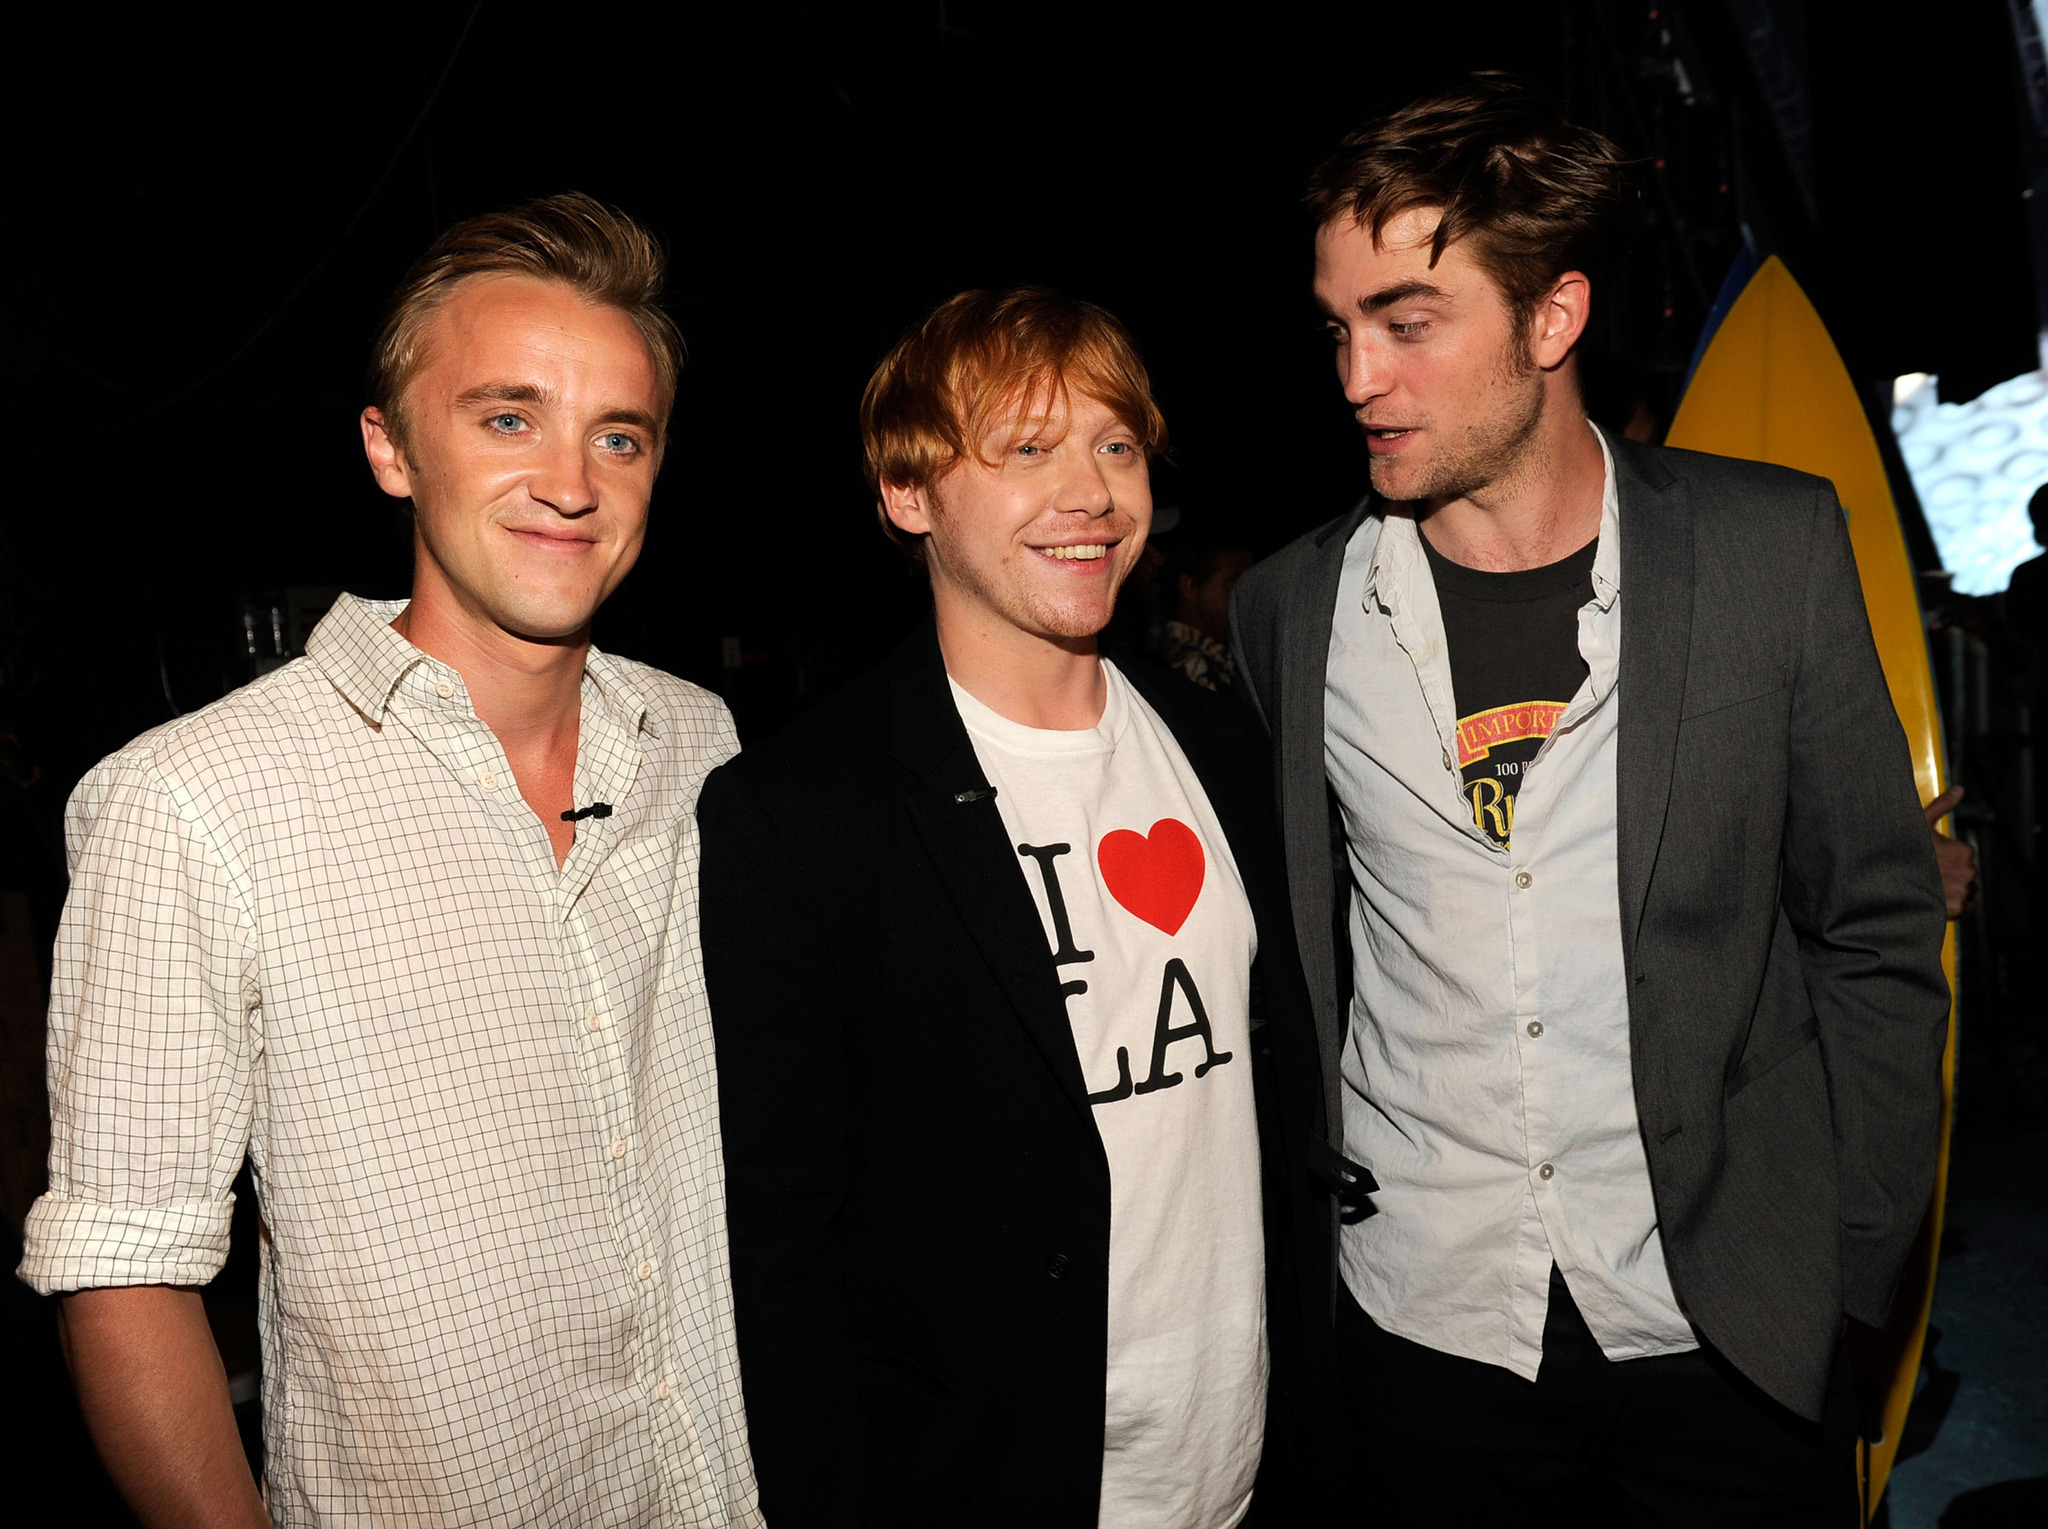 Tom Felton, Rupert Grint and Robert Pattinson at event of Teen Choice 2011 (2011)